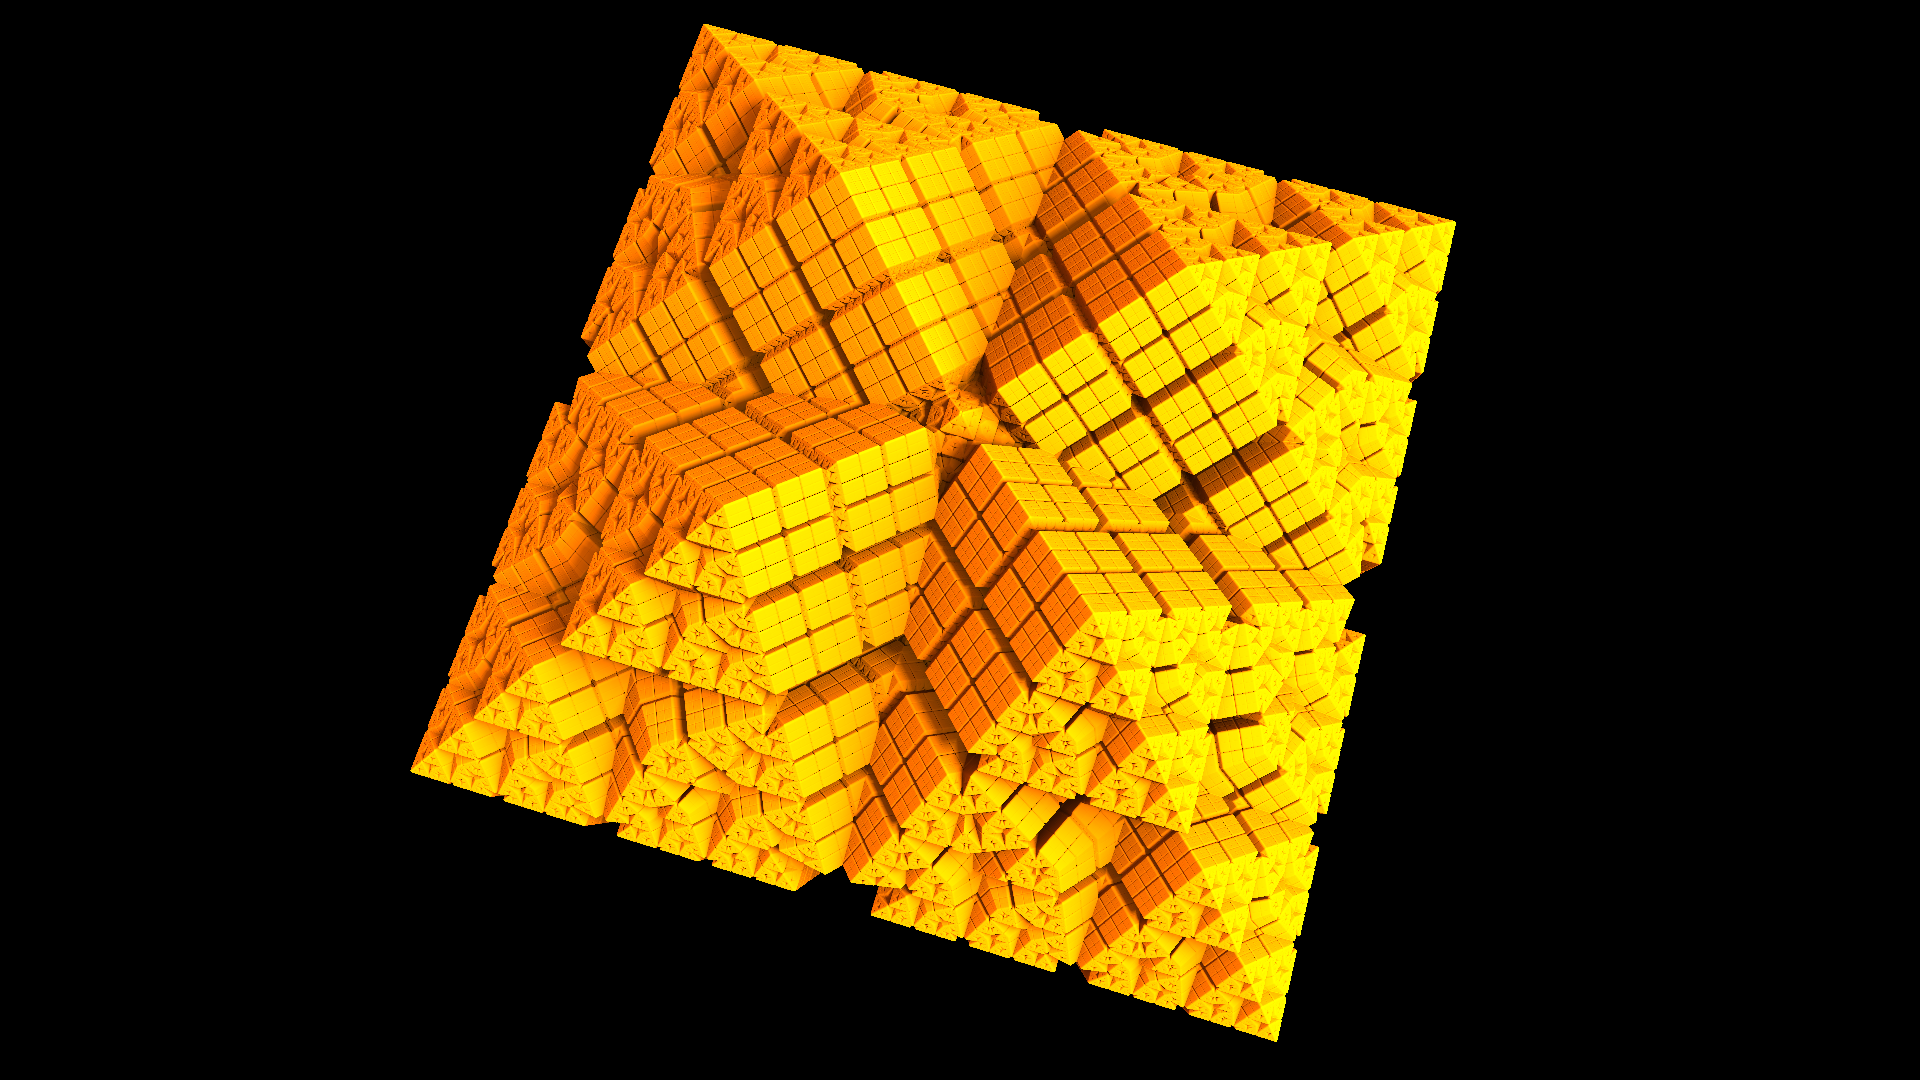 Abstract Artistic Crystal Cube Digital Art Fractal Gold Mandelbulber 3d Orange Color 1920x1080